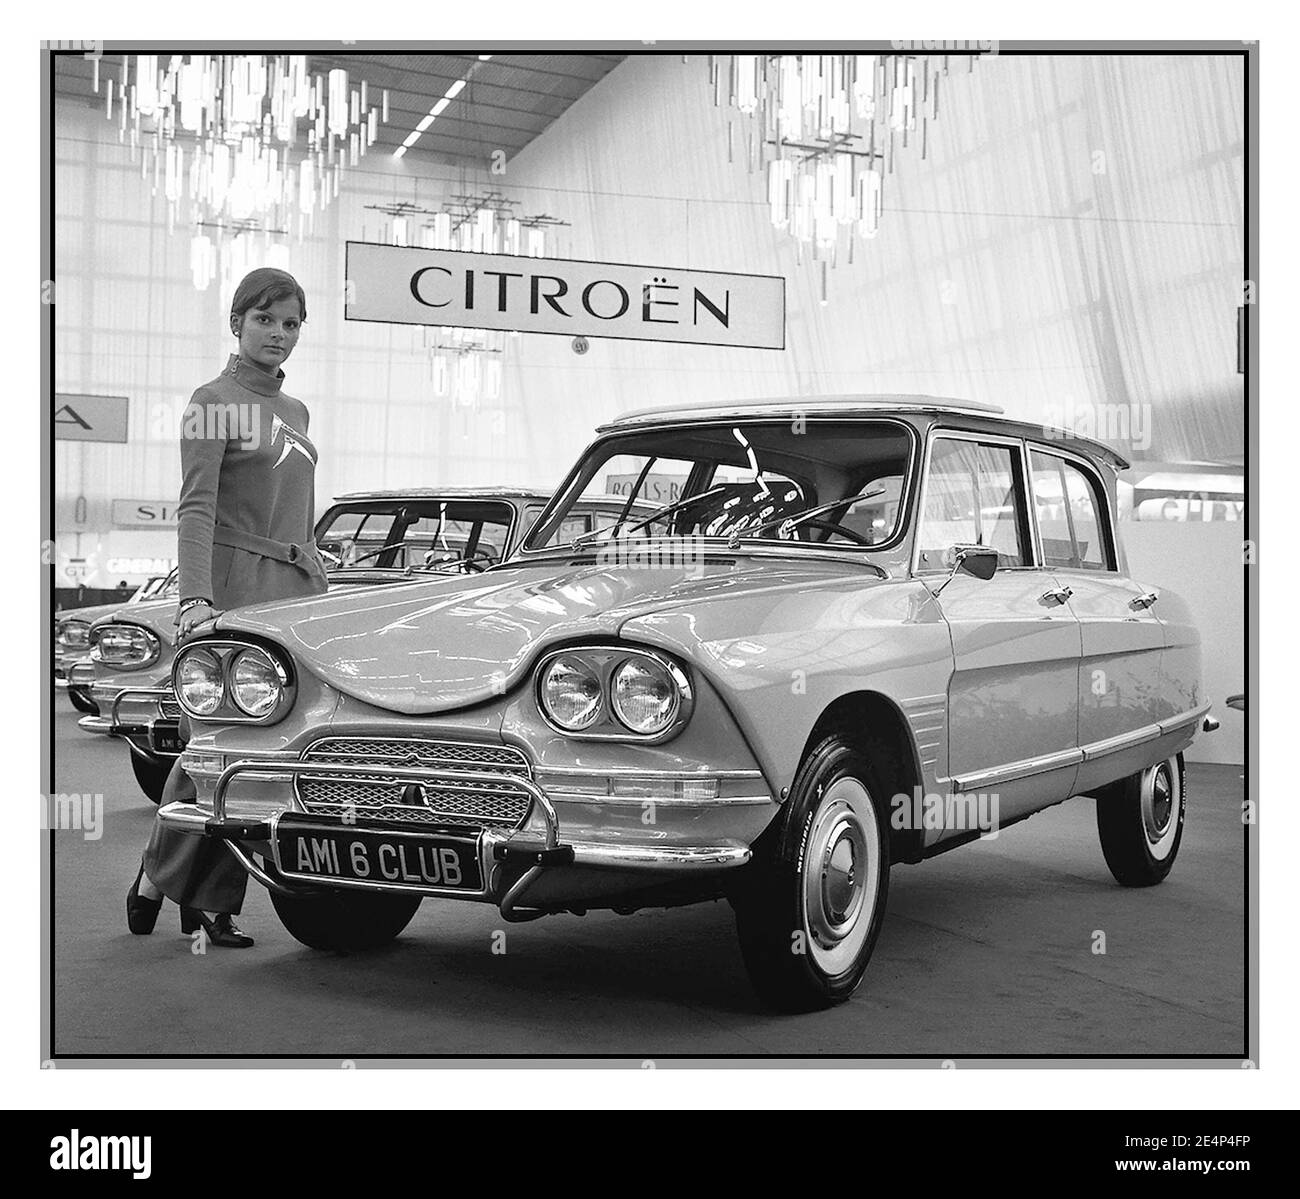 1961 Citroën Ami 6 Club 4 dr, motorcar e venditore femminile al suo lancio al Salone dell'automobile di Parigi. L'Ami 6 è stato il primo modello ad essere prodotto nel nuovo stabilimento di Citroën, inaugurato nel 1961, alla presenza del General de Gaulle, nel sud-ovest del centro di Rennes, Bretagna, Francia Foto Stock